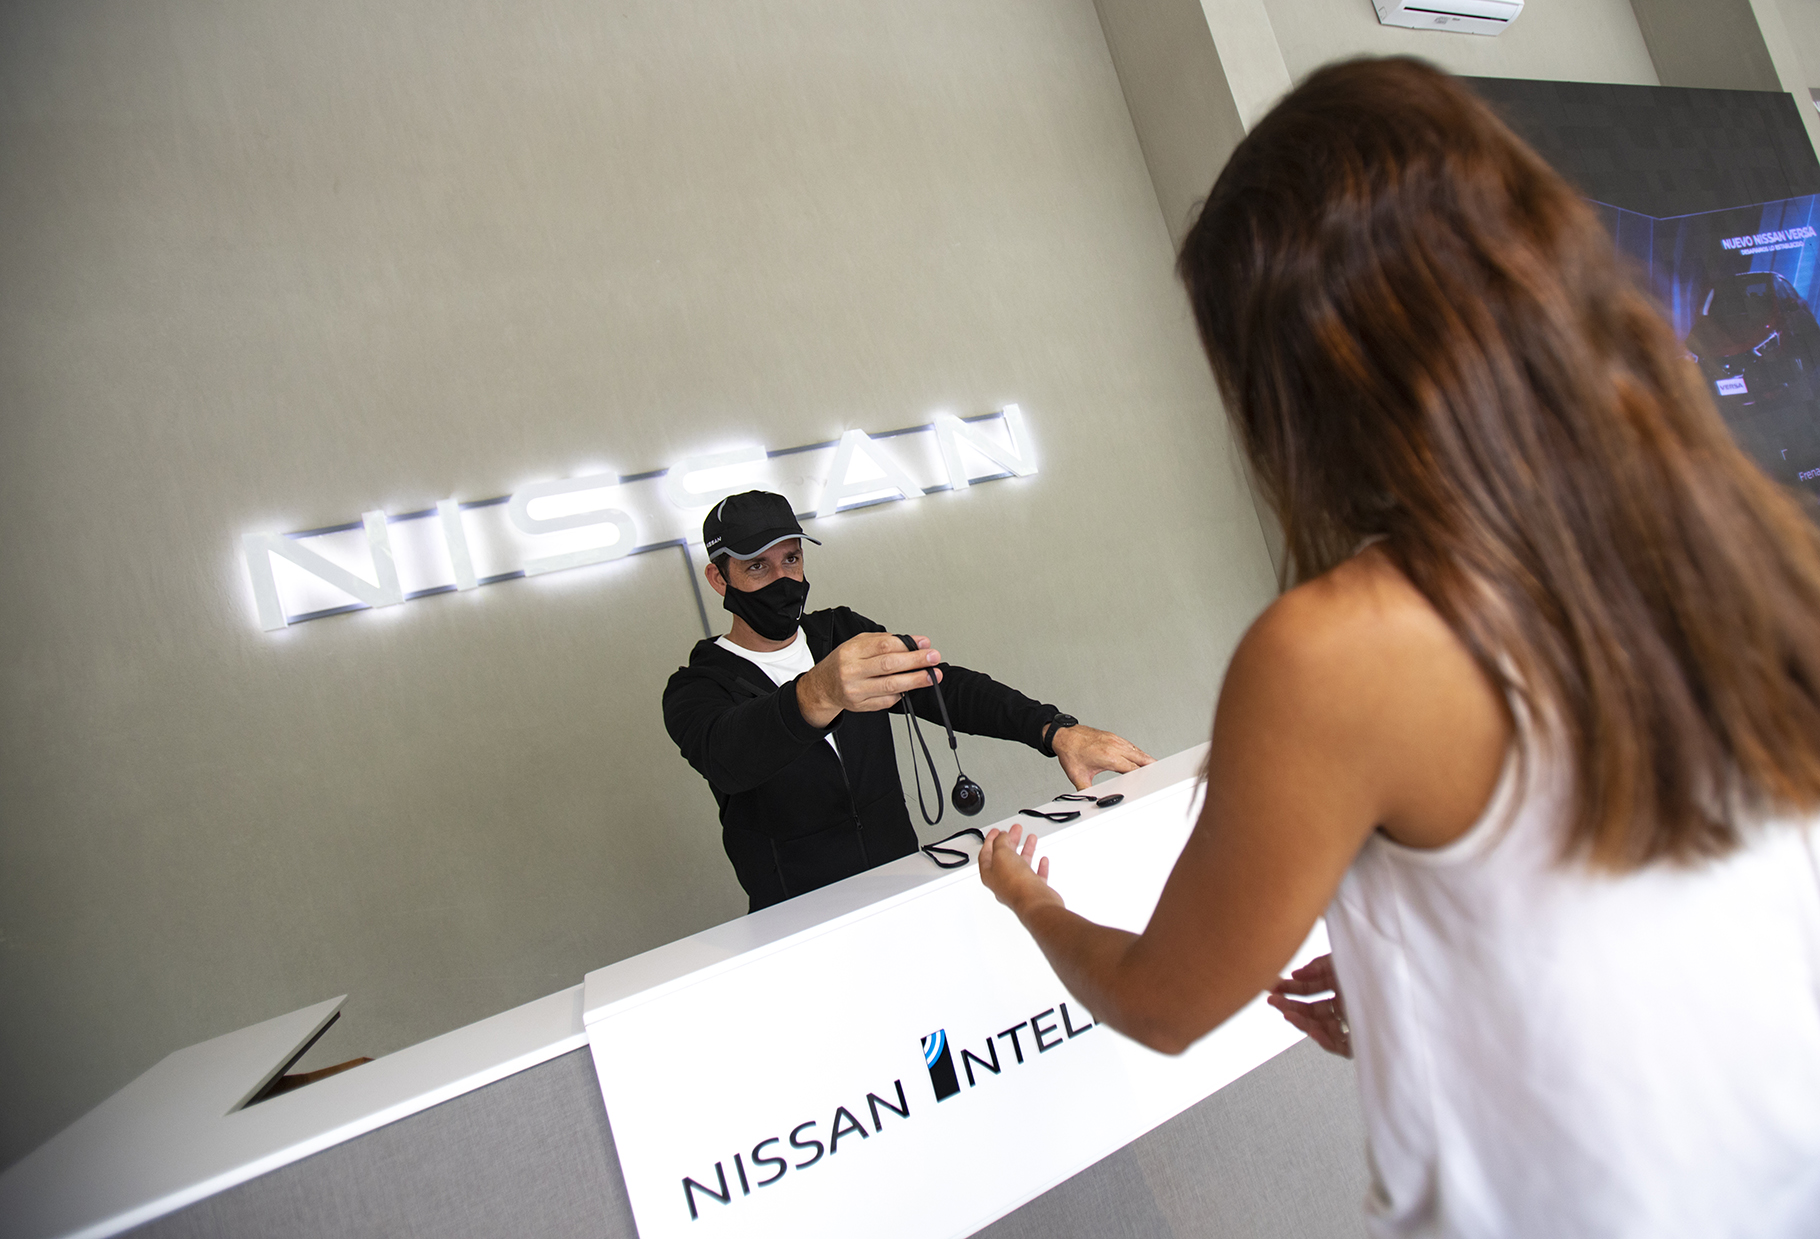 El modelo de alerta sanitario del “Dispositivo de Distanciamiento Físico Nissan”